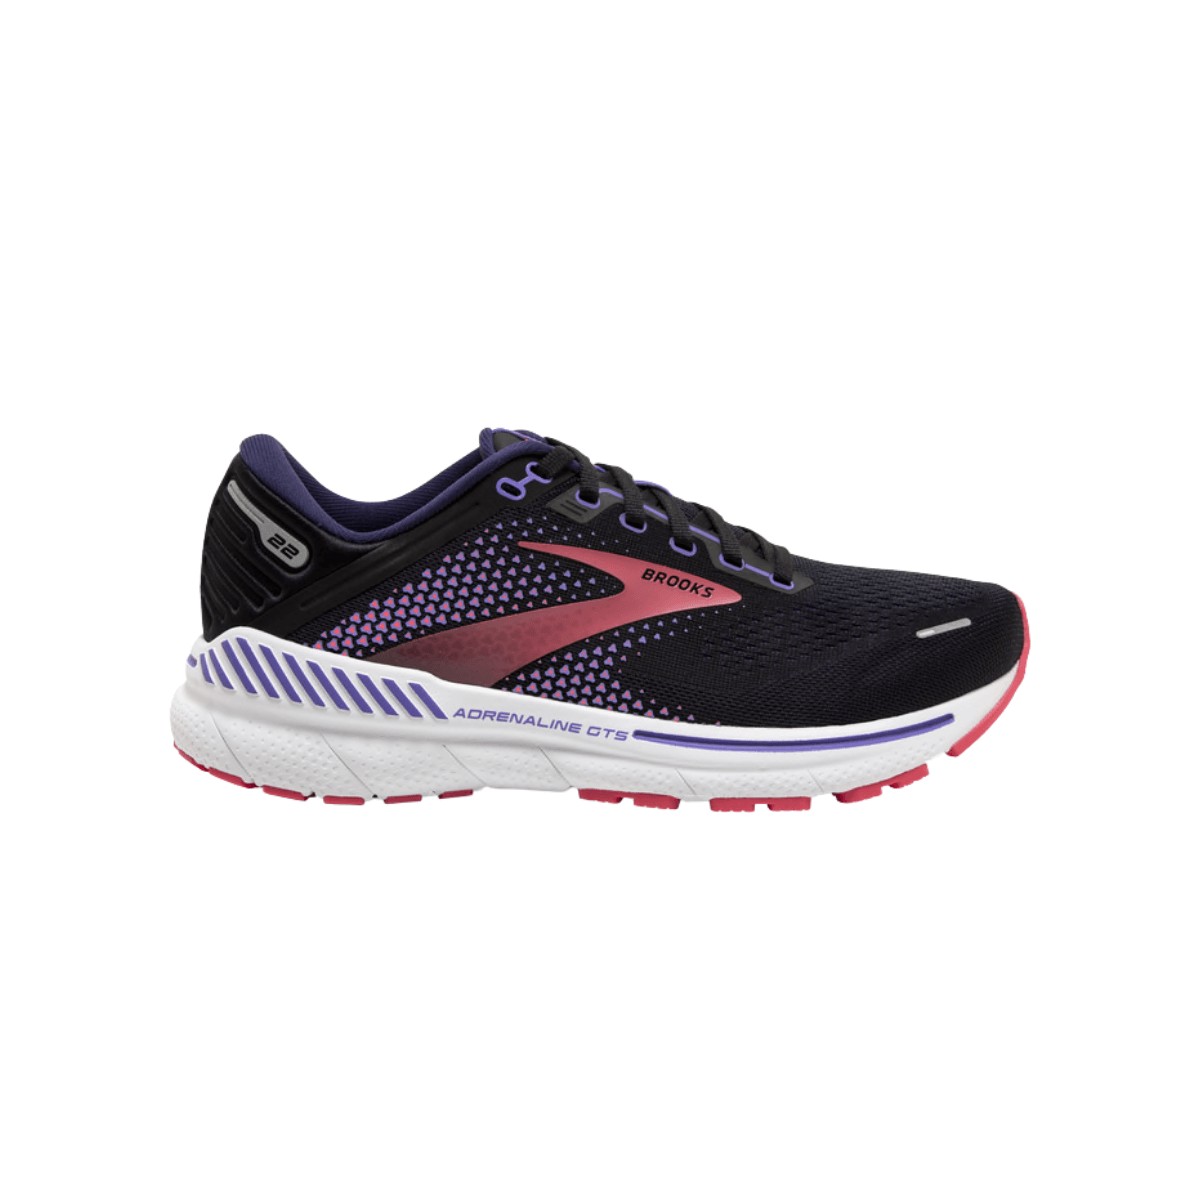 Brooks Adrenaline GTS 22 Wide Women's Shoes Purple Coral Black SS22, Size 38 - EUR